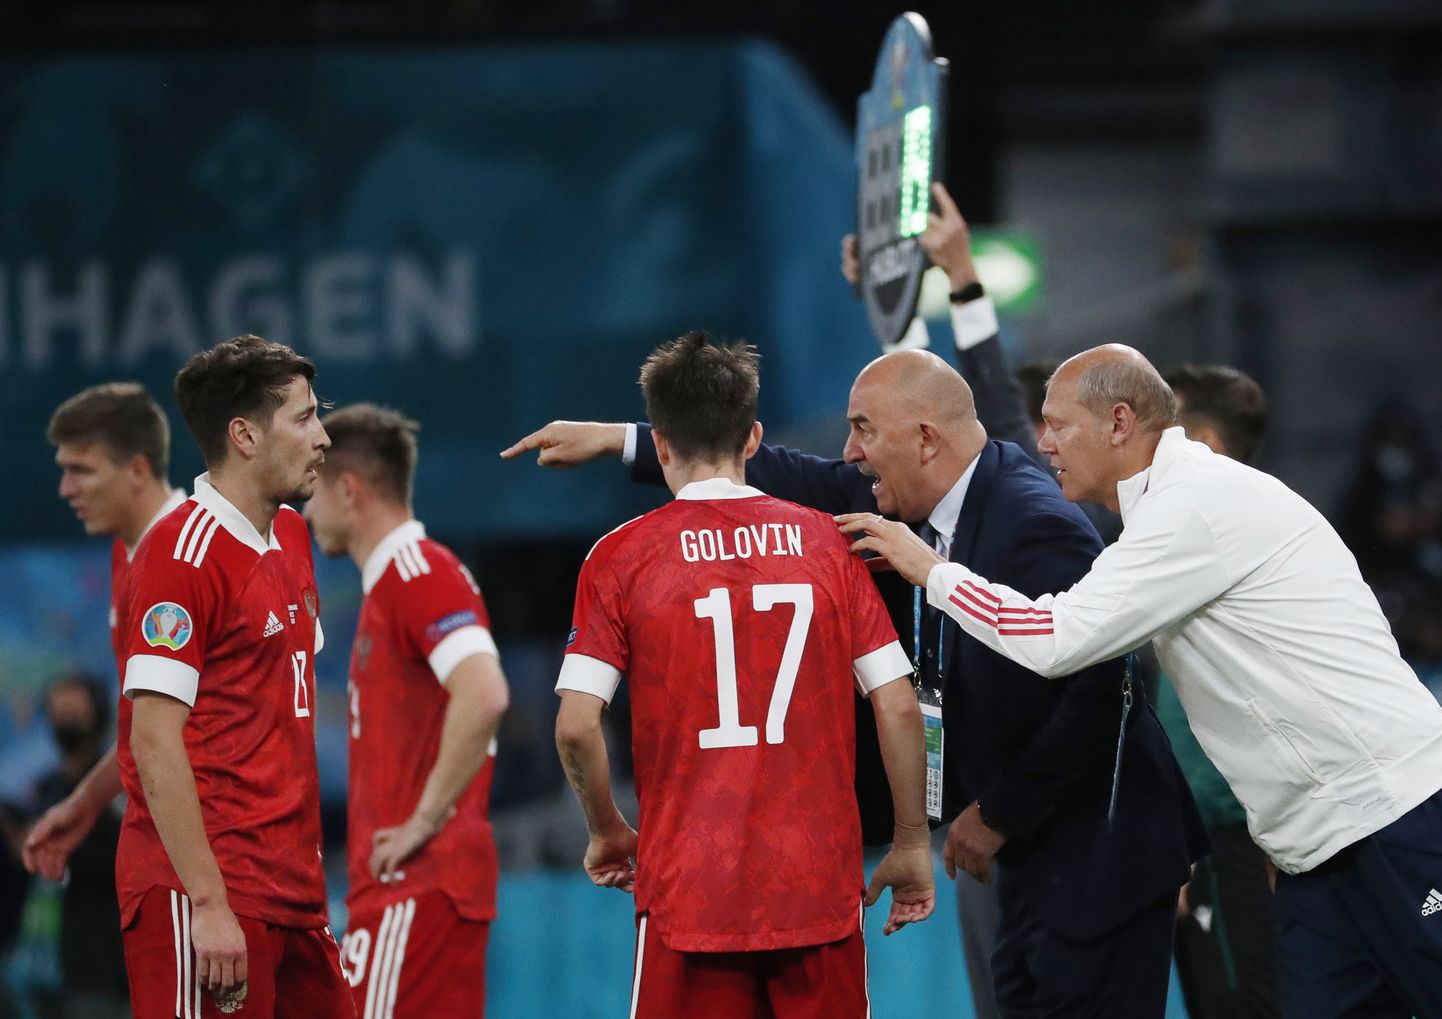 Момент матча между сборными России и Дании.